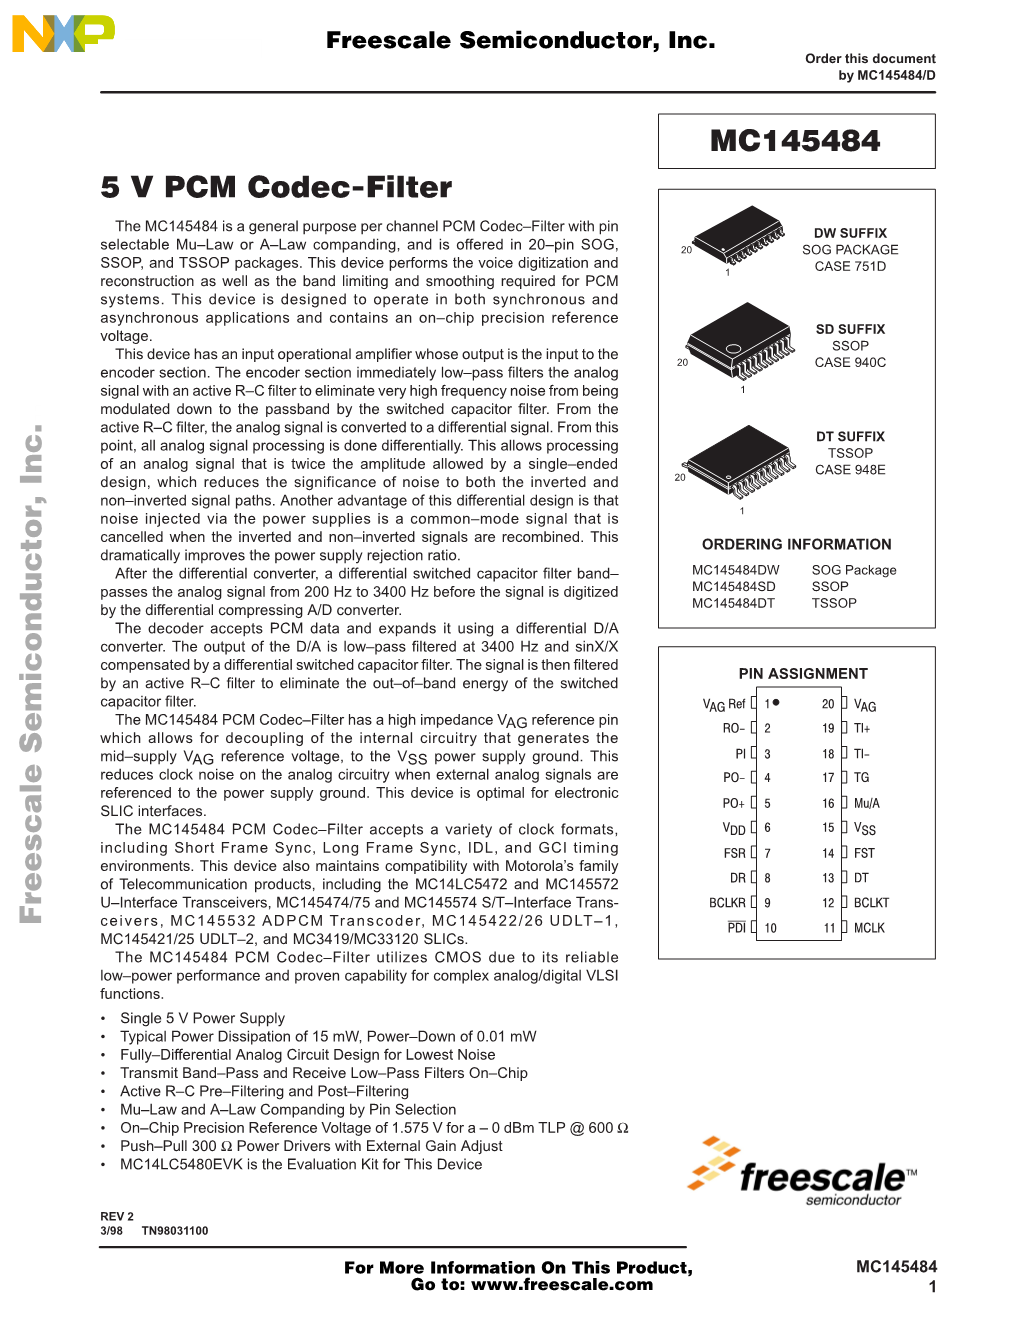 5 V PCM Codec-Filter MC145484